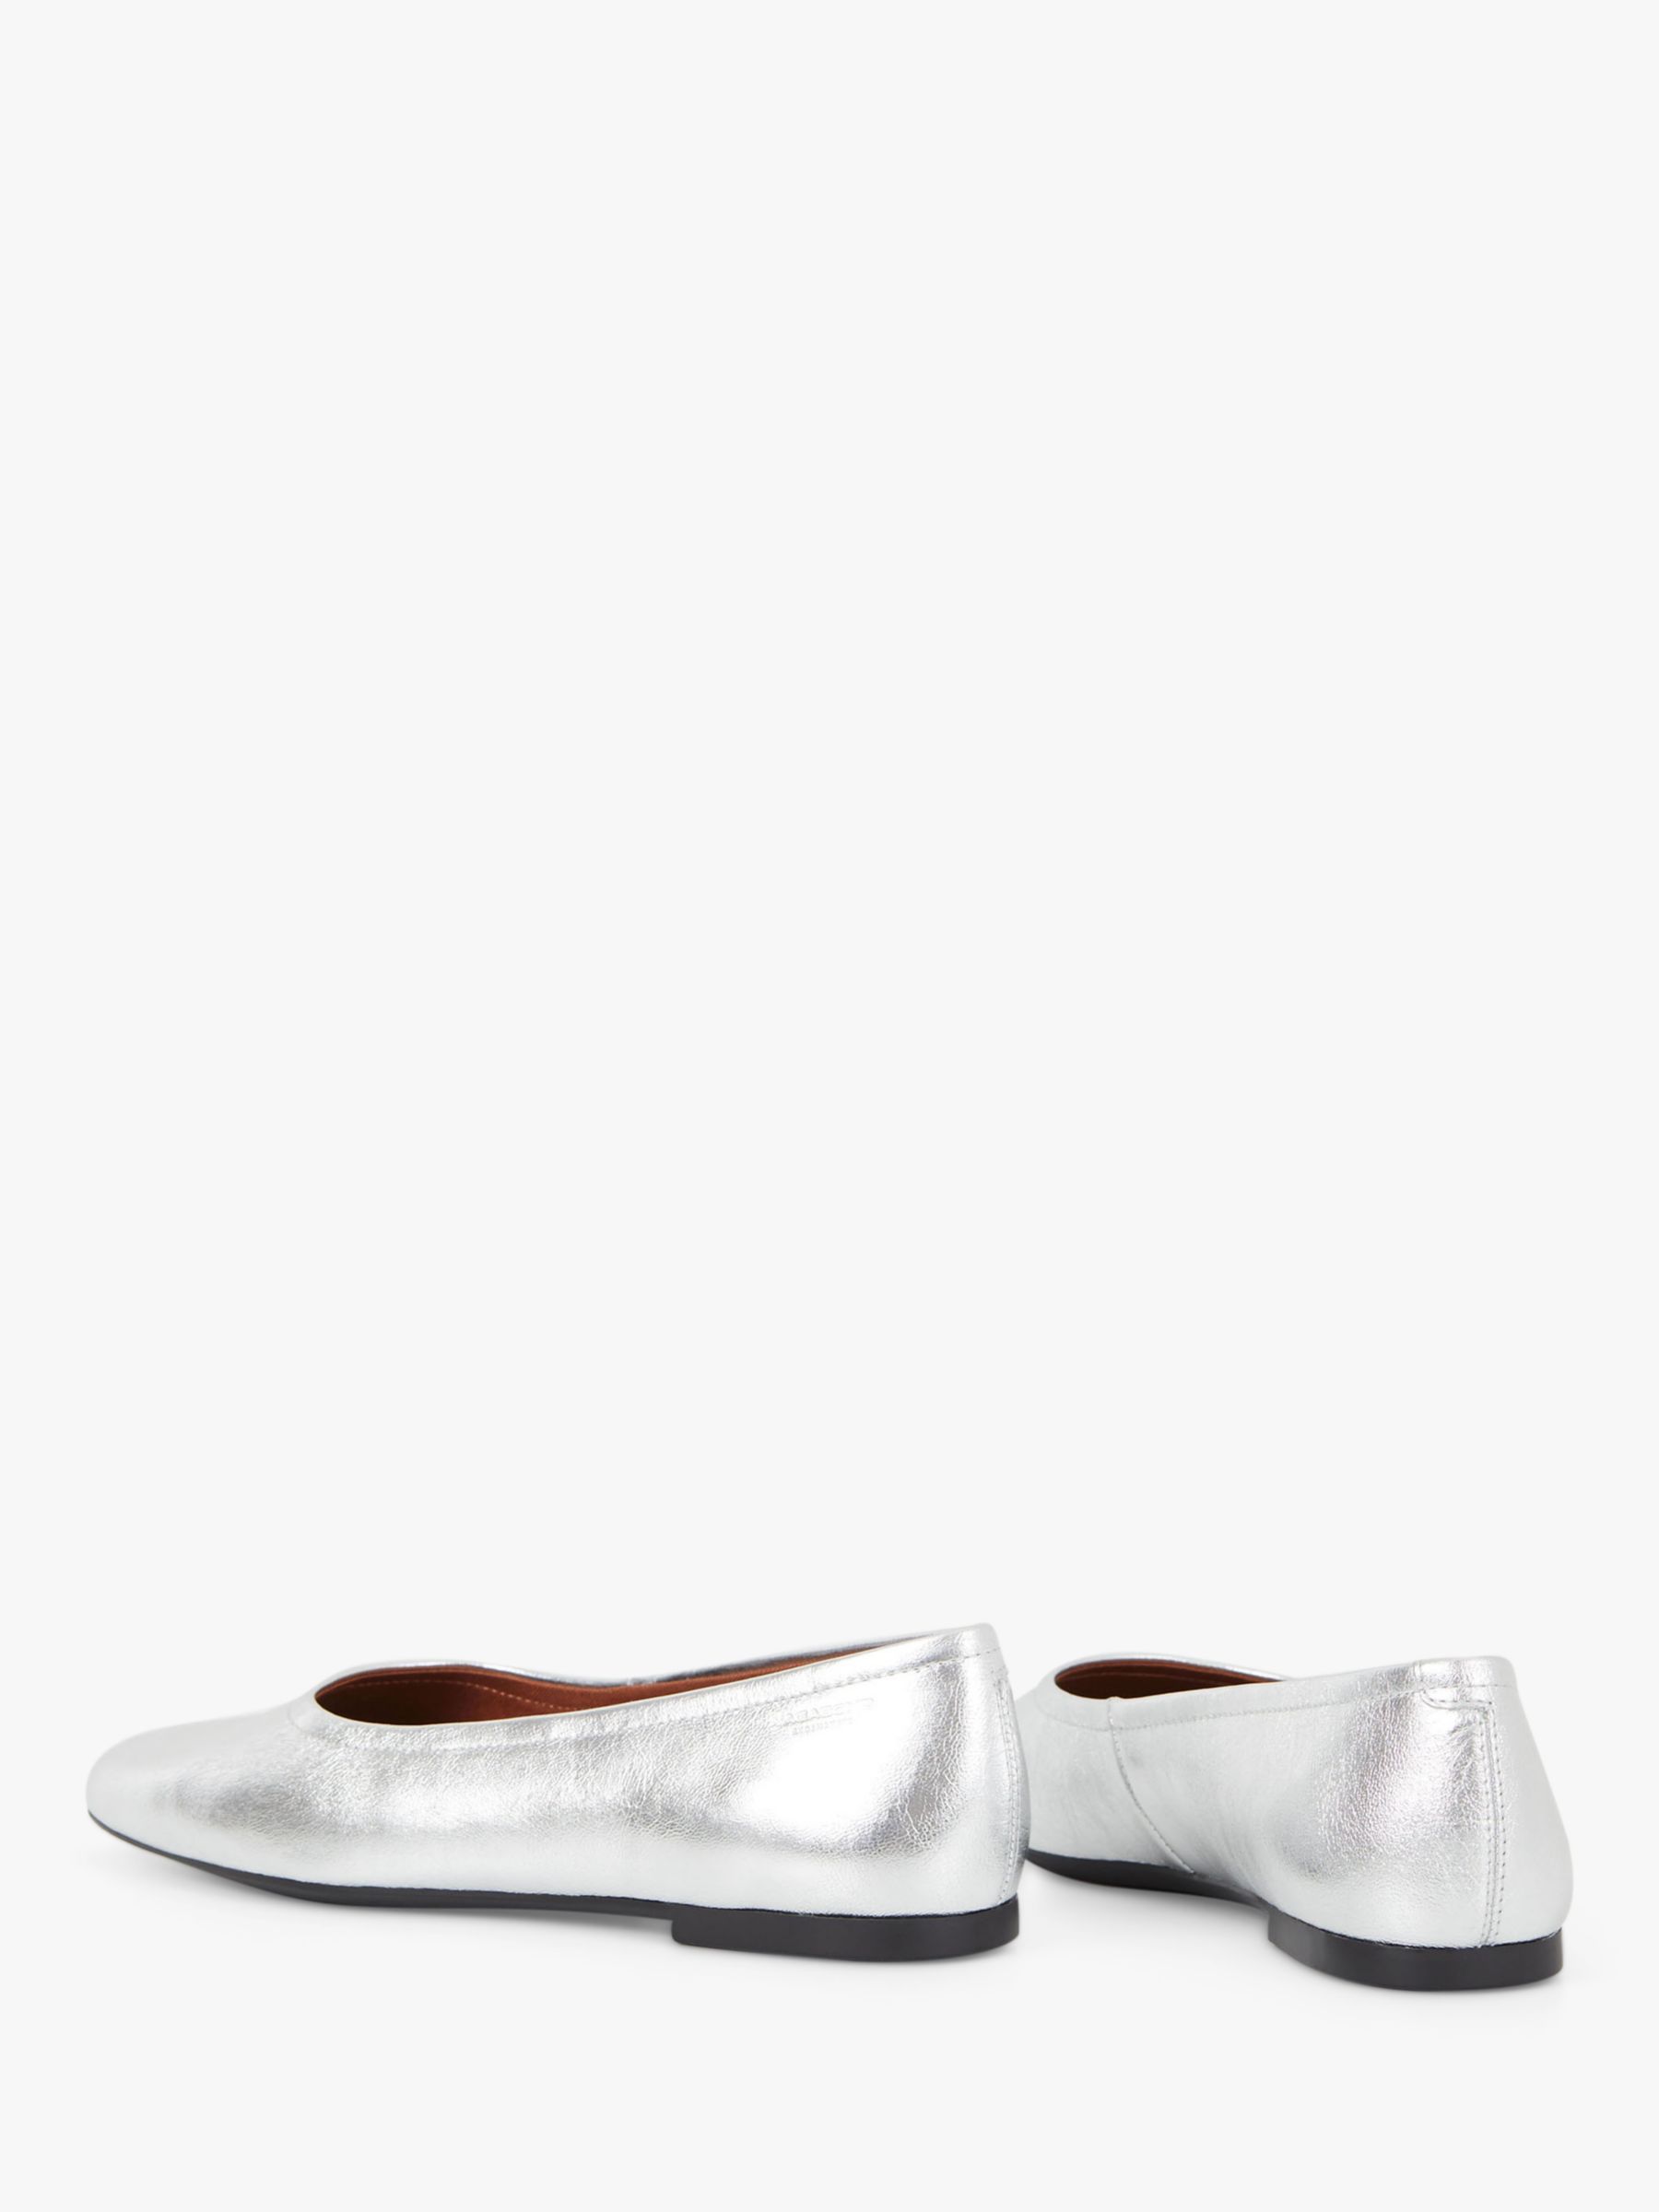 Vagabond Shoemakers Jolin Leather Ballet Pumps, Silver, 8